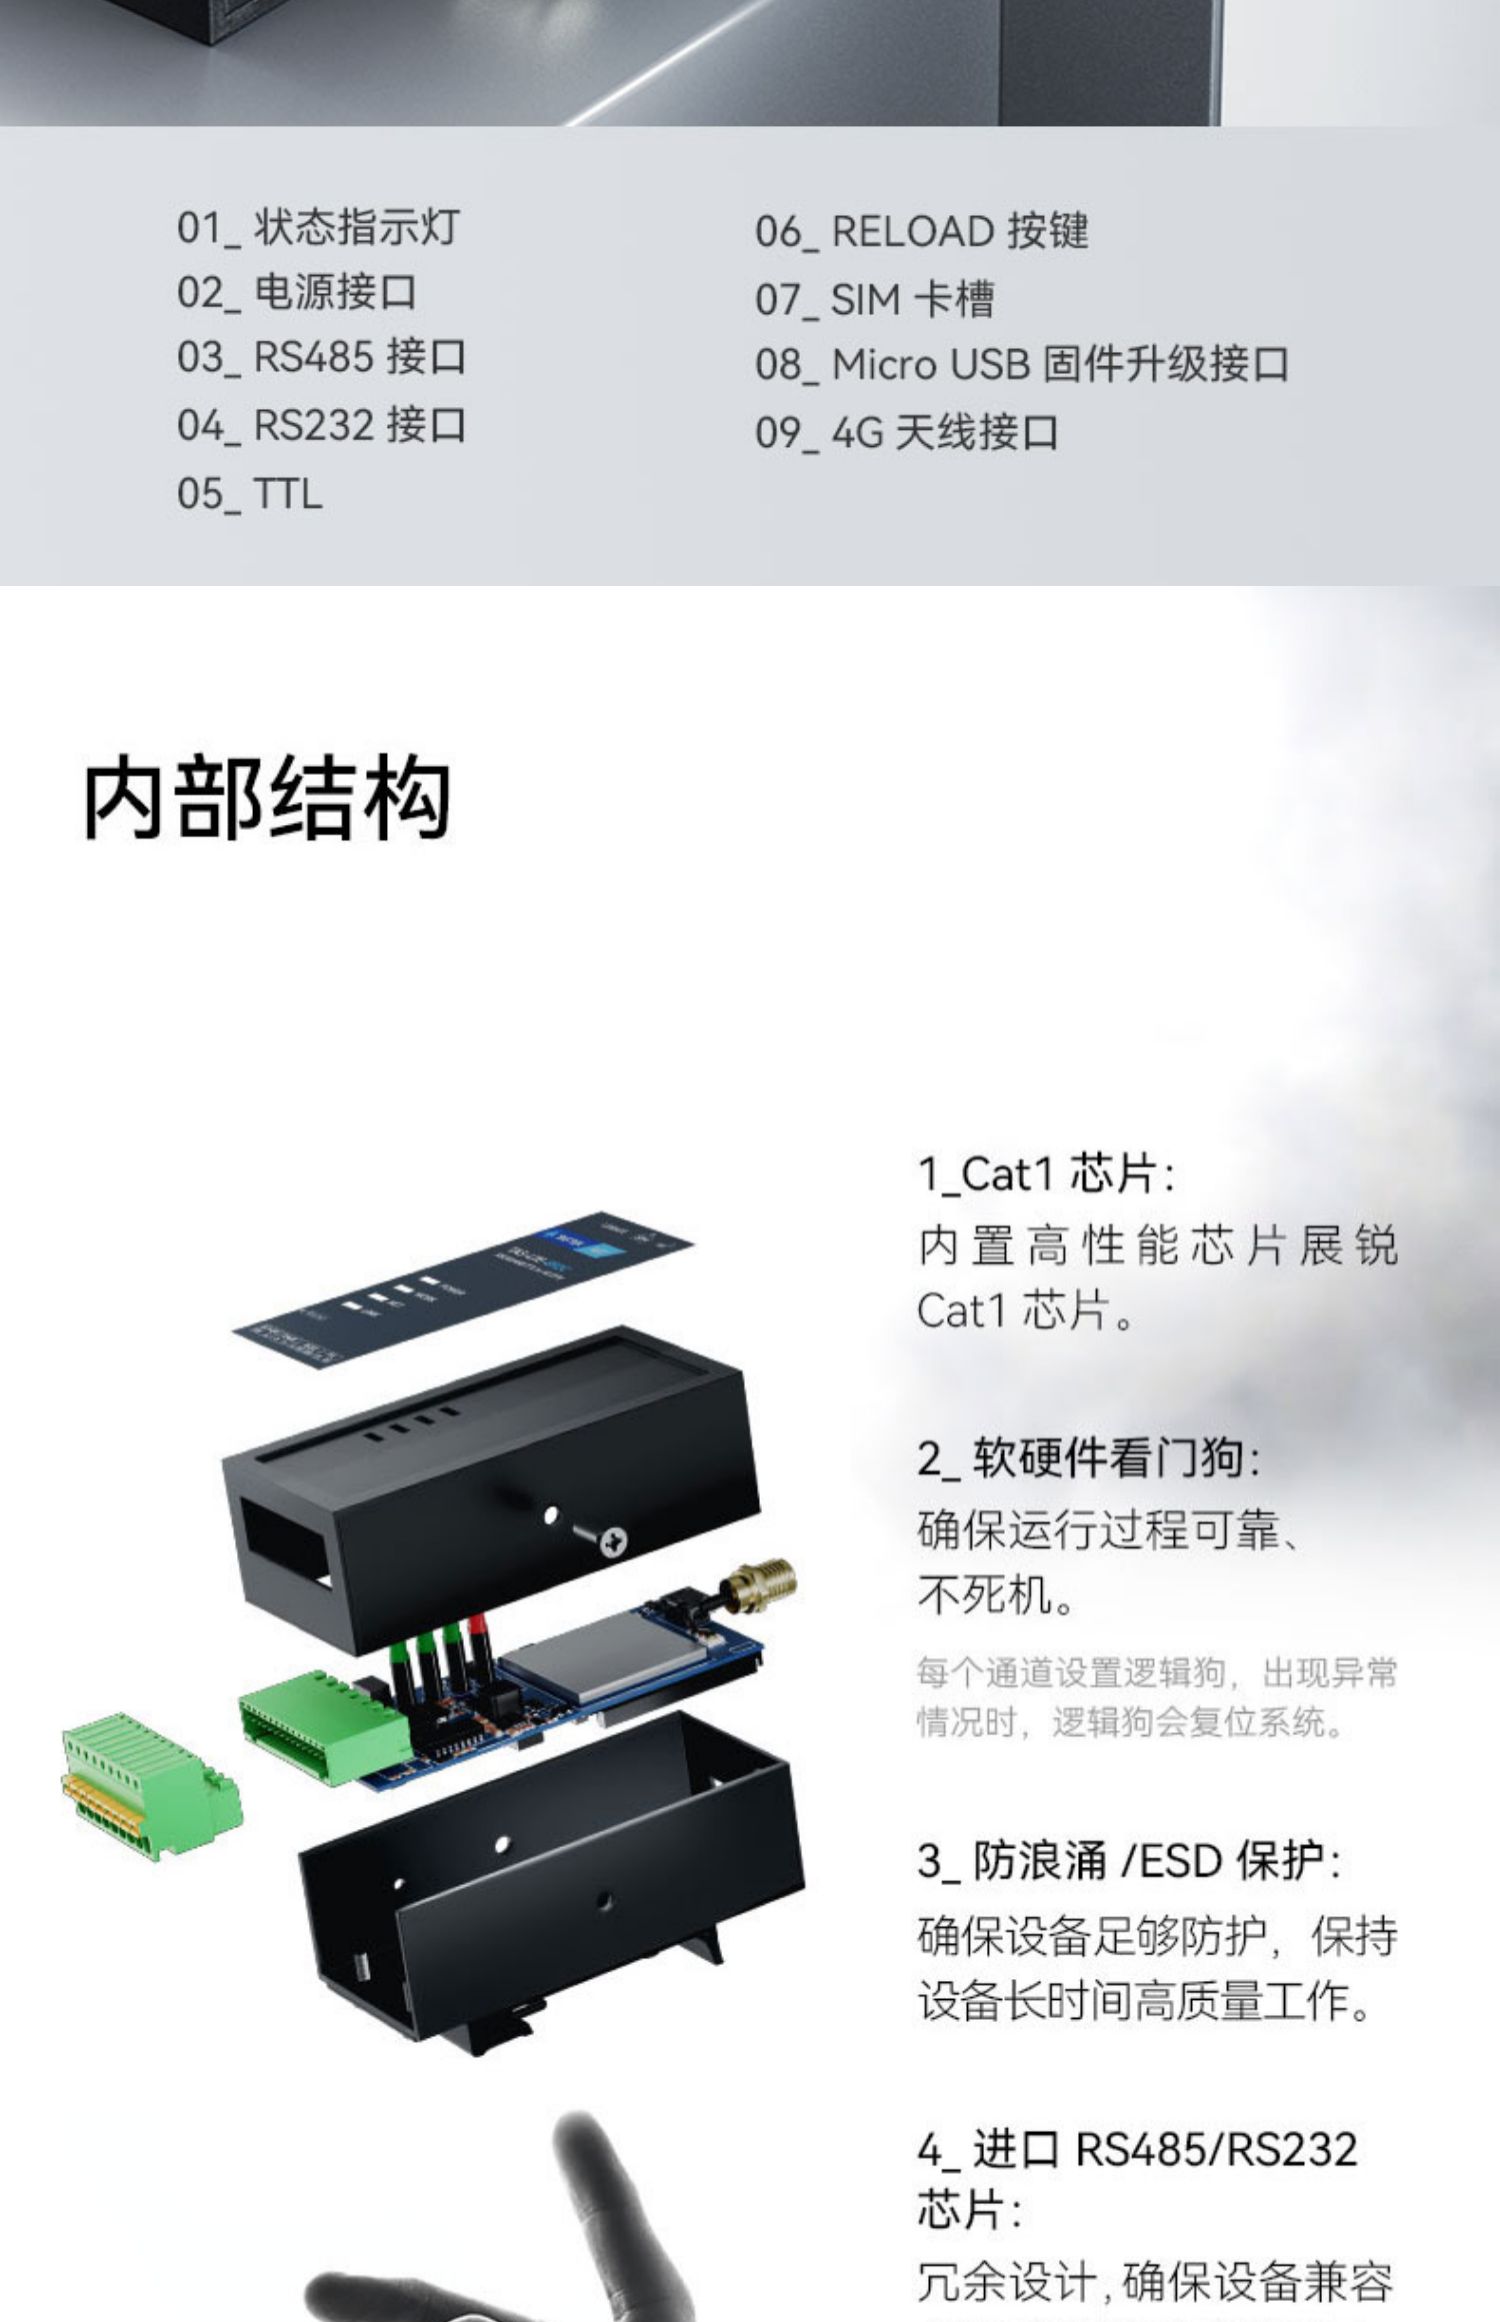 塔石TAS-LTE-892C 4G模块DTU 无线通信GSM 物联网透传 485通讯 GPRS设备远程控制监控PLC